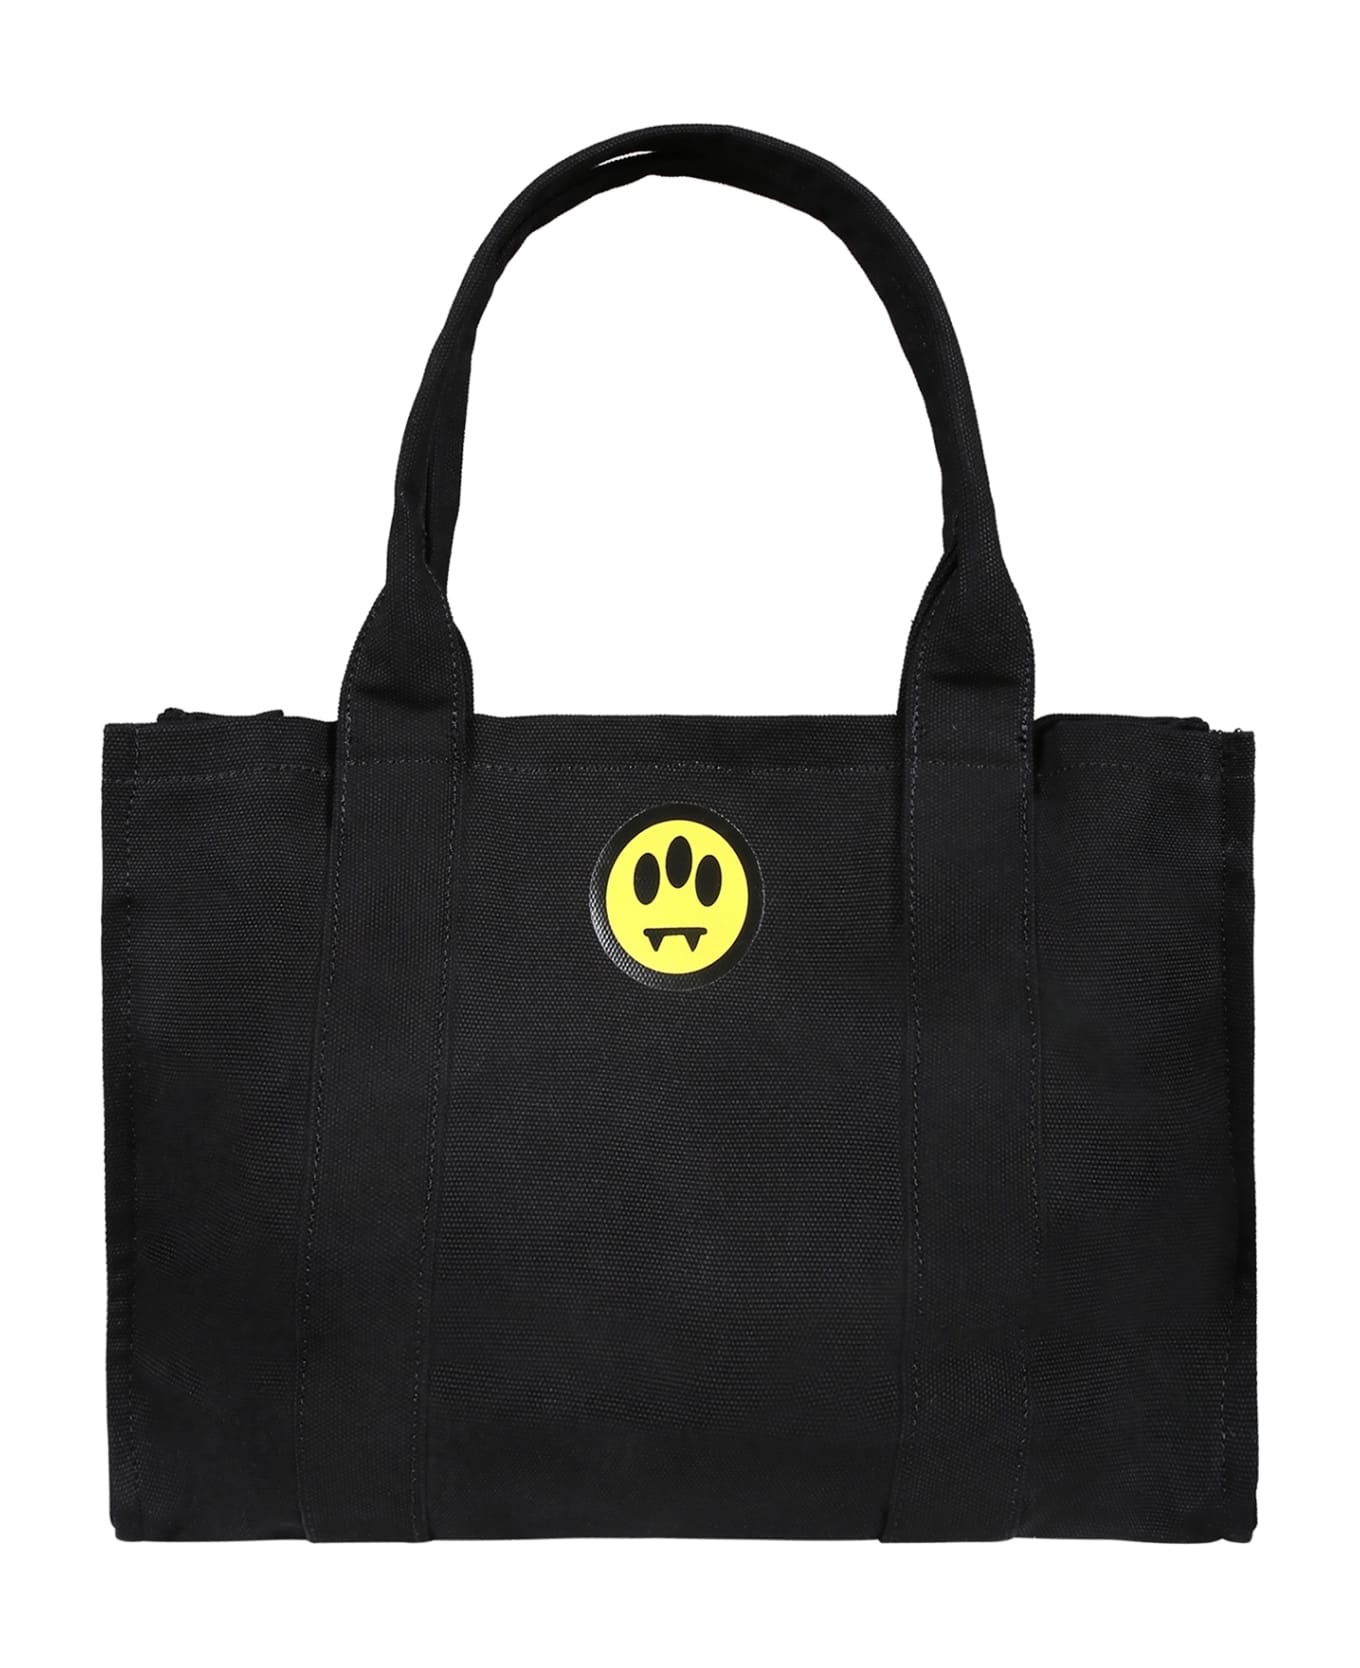 Barrow Black Bag For Girl With Logo And Smiley - Black